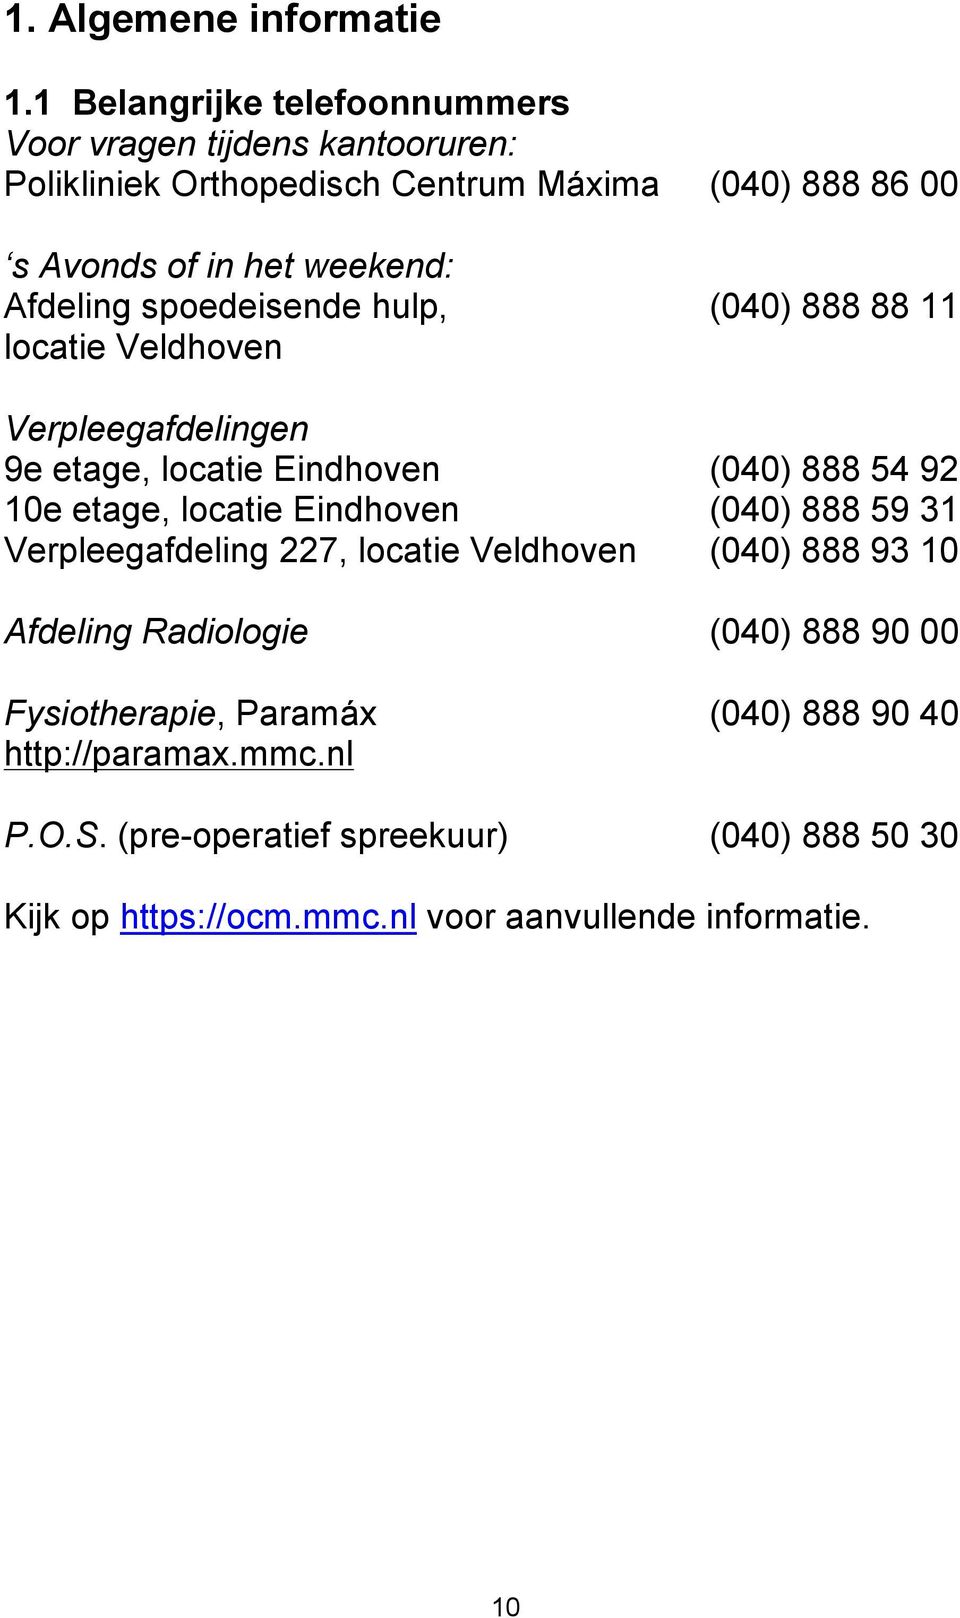 Afdeling spoedeisende hulp, (040) 888 88 11 locatie Veldhoven Verpleegafdelingen 9e etage, locatie Eindhoven (040) 888 54 92 10e etage, locatie